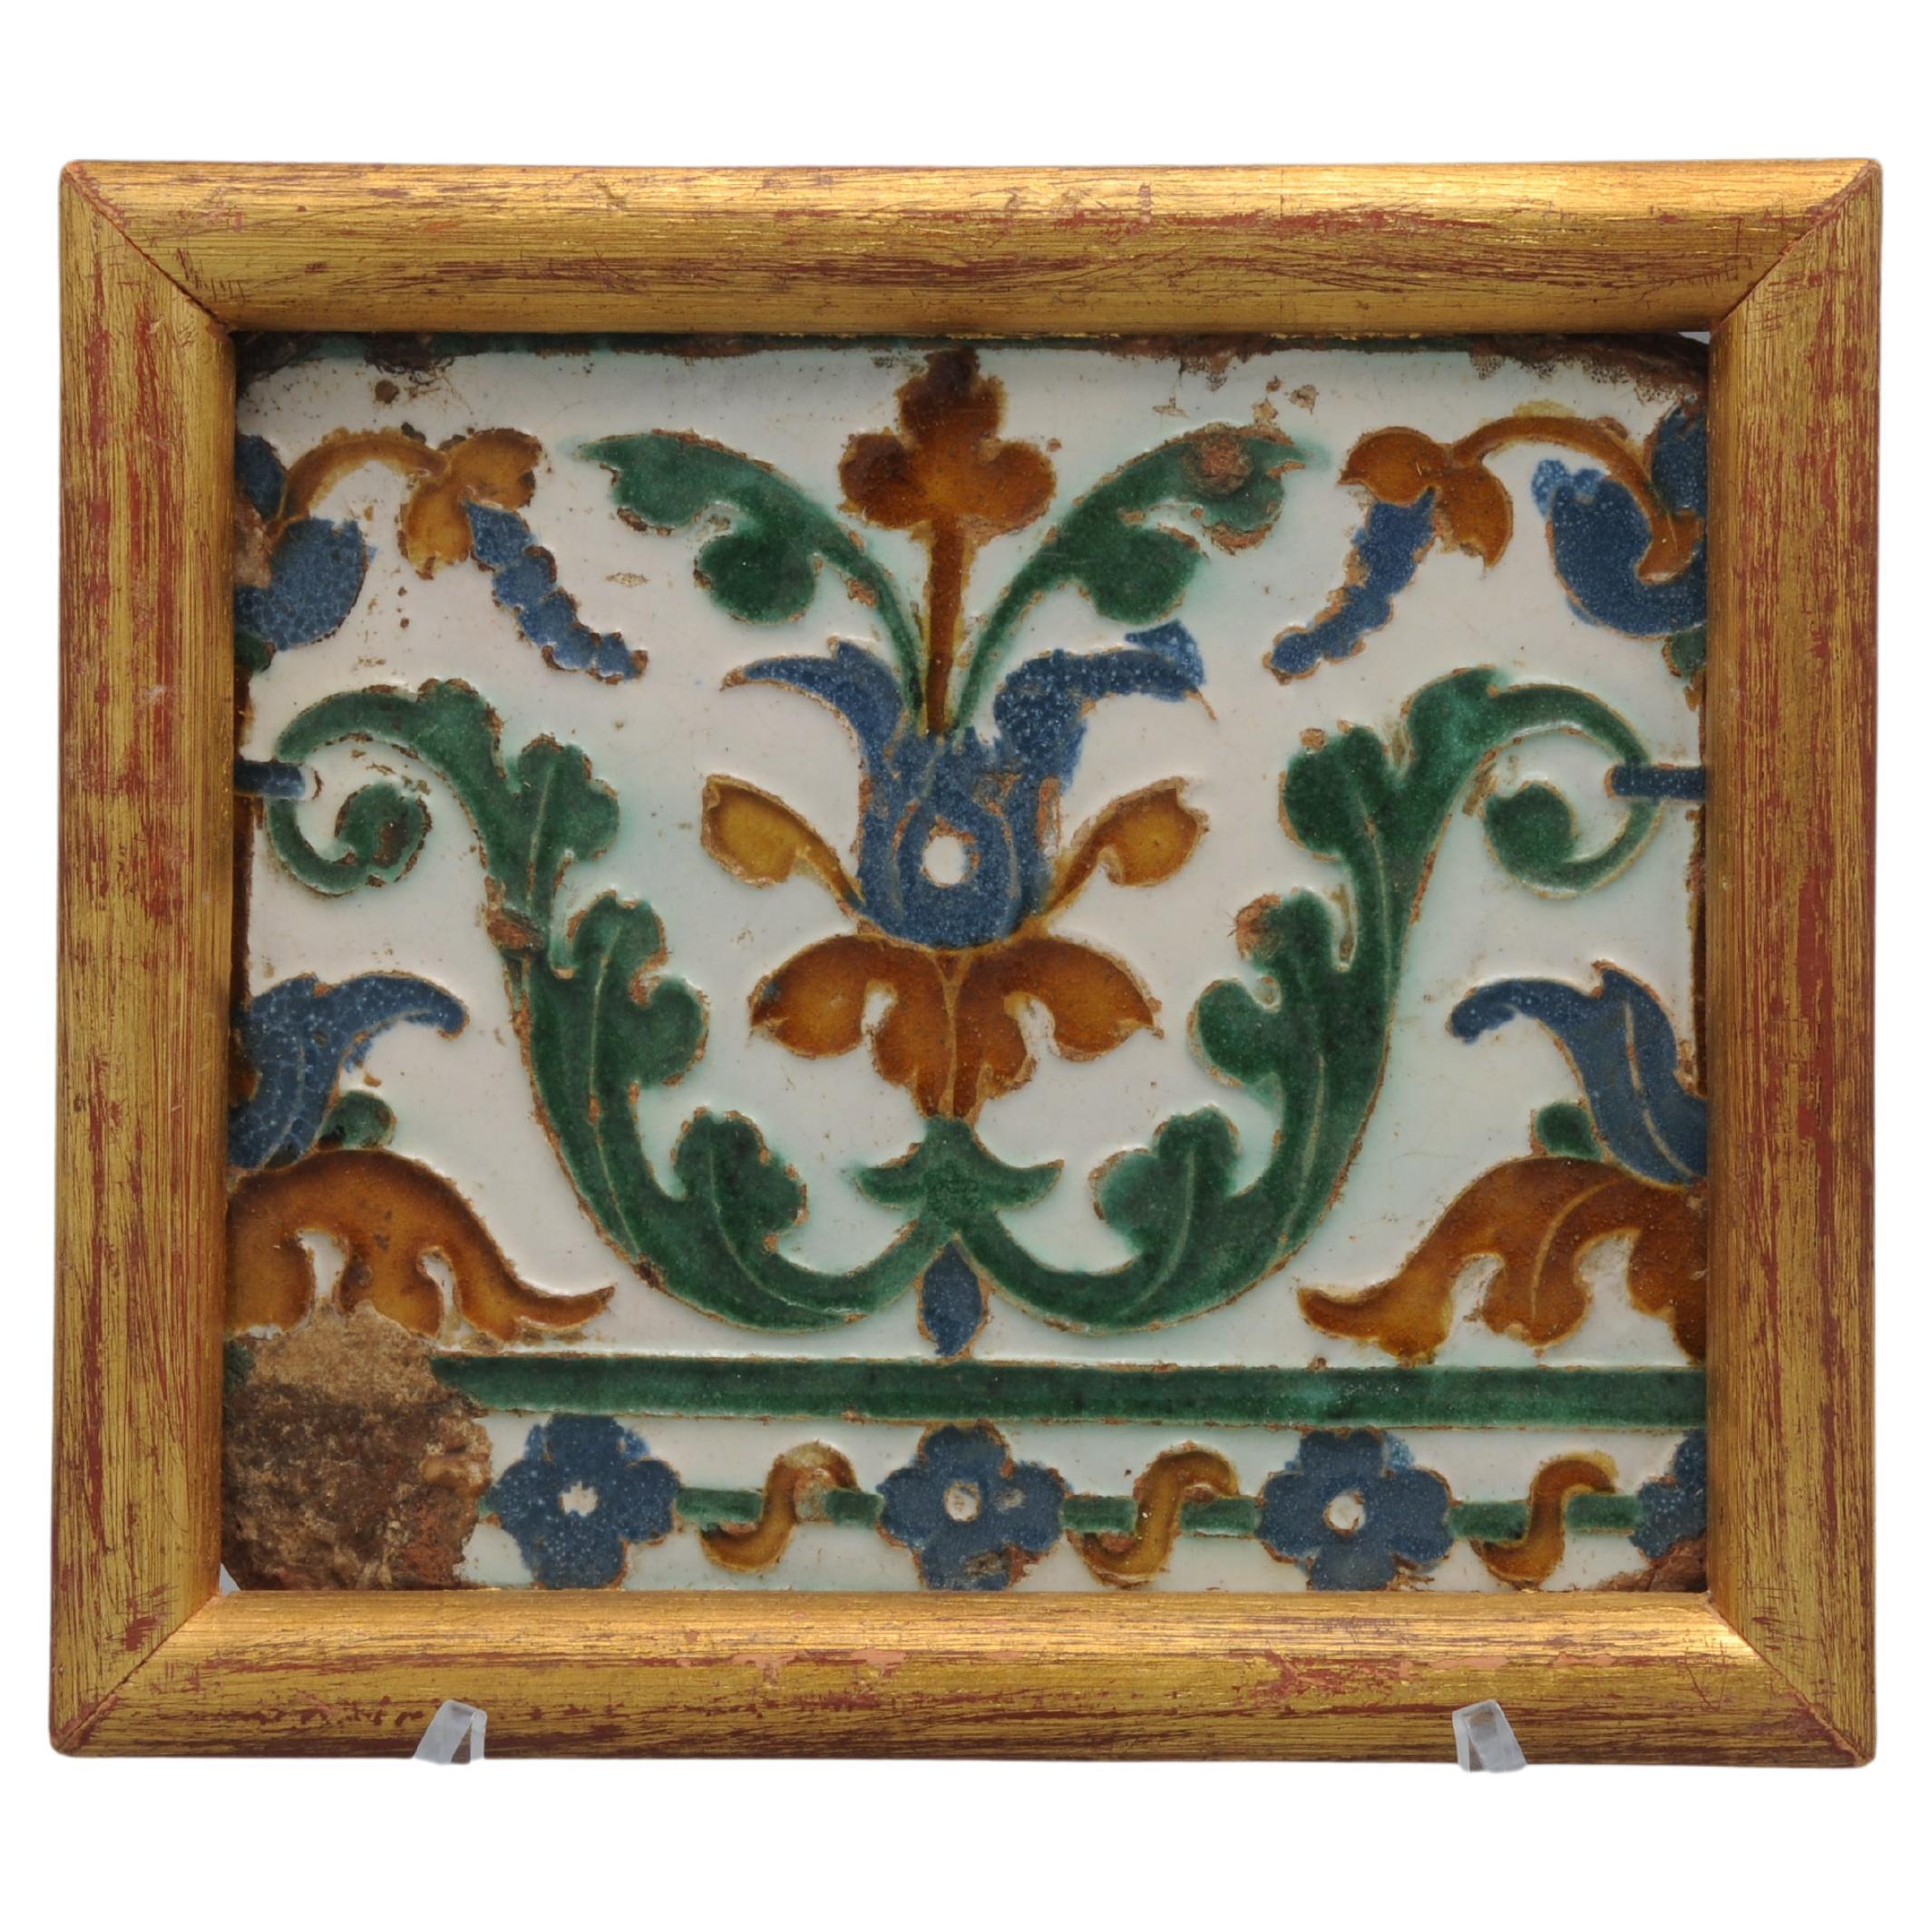 Spanish Azulejo Tile Arista y Cuenca - Toledo 16th century